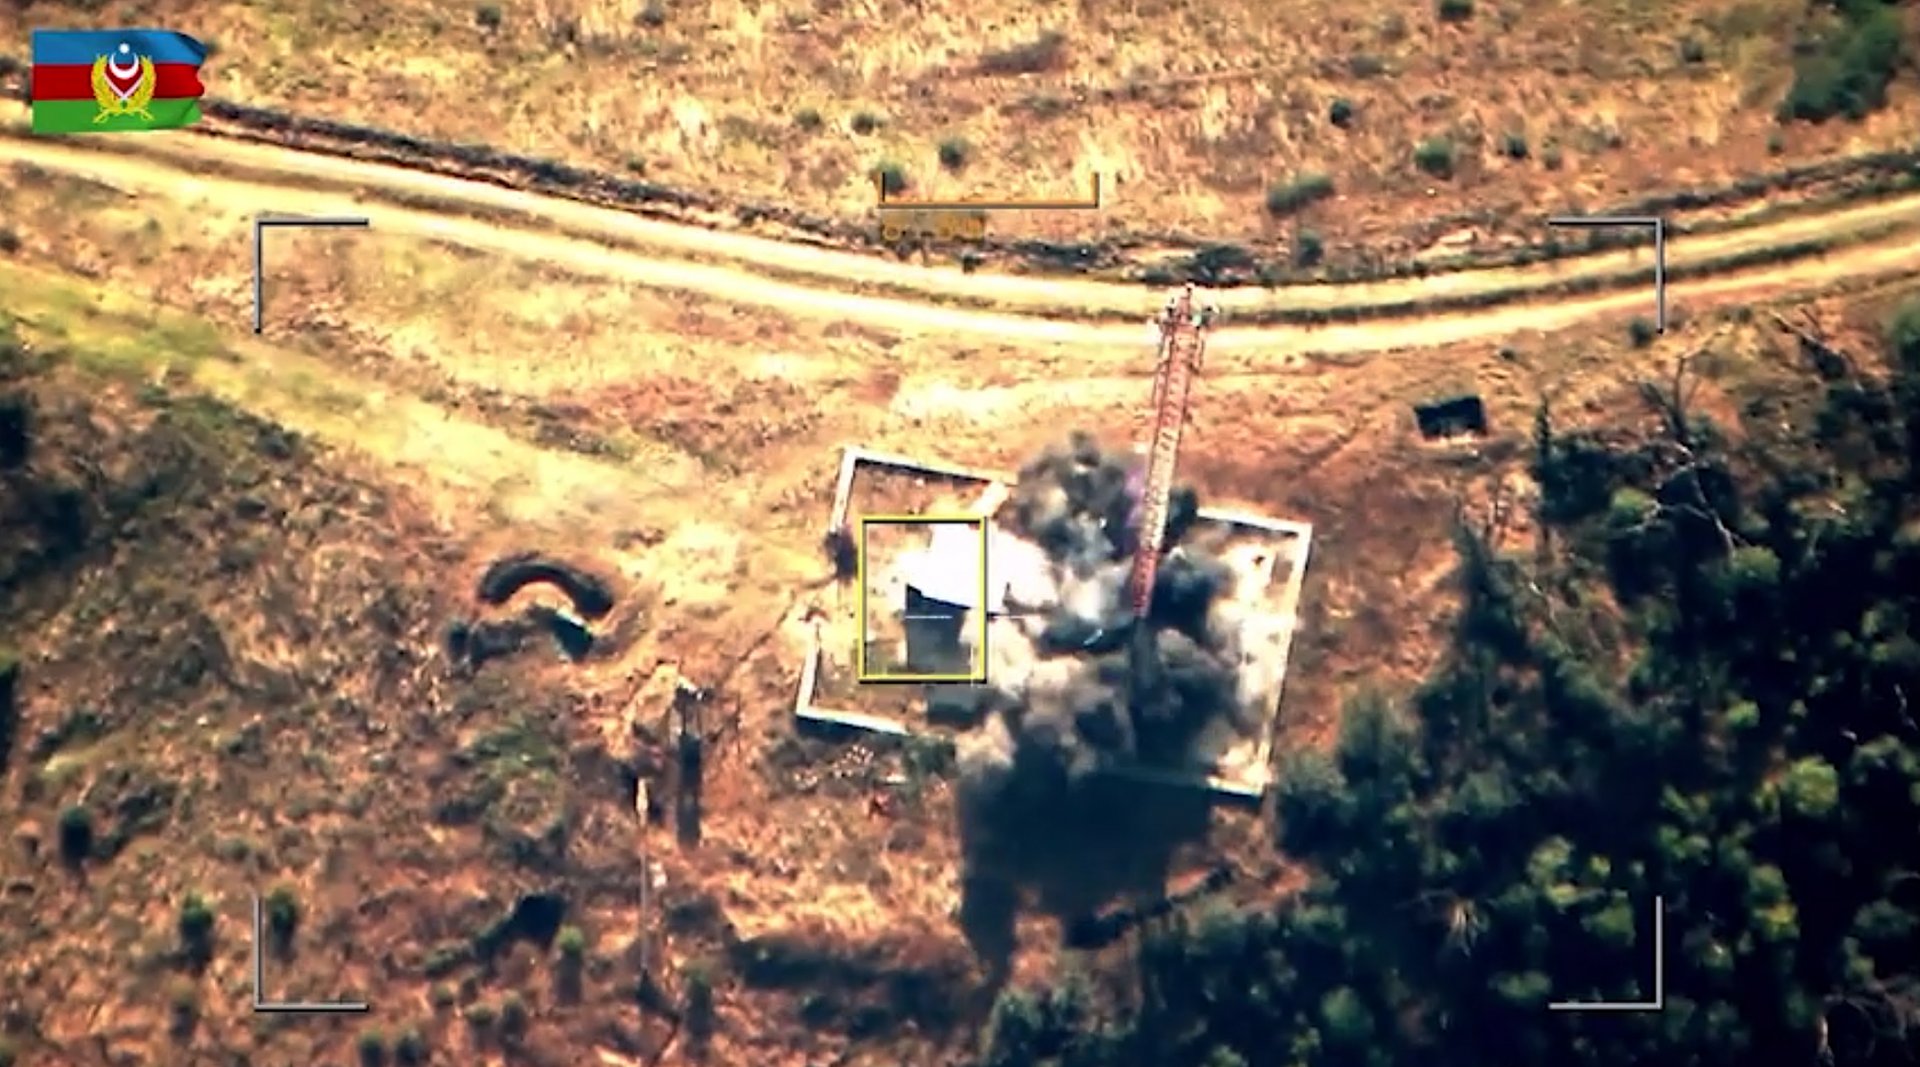 Стопкадър от видео на взрив на територията на Нагорни Карабах, на която според Азербайджан са разположени арменски сили. Снимка: Министерство на отбраната на Азербайджан чрез АП